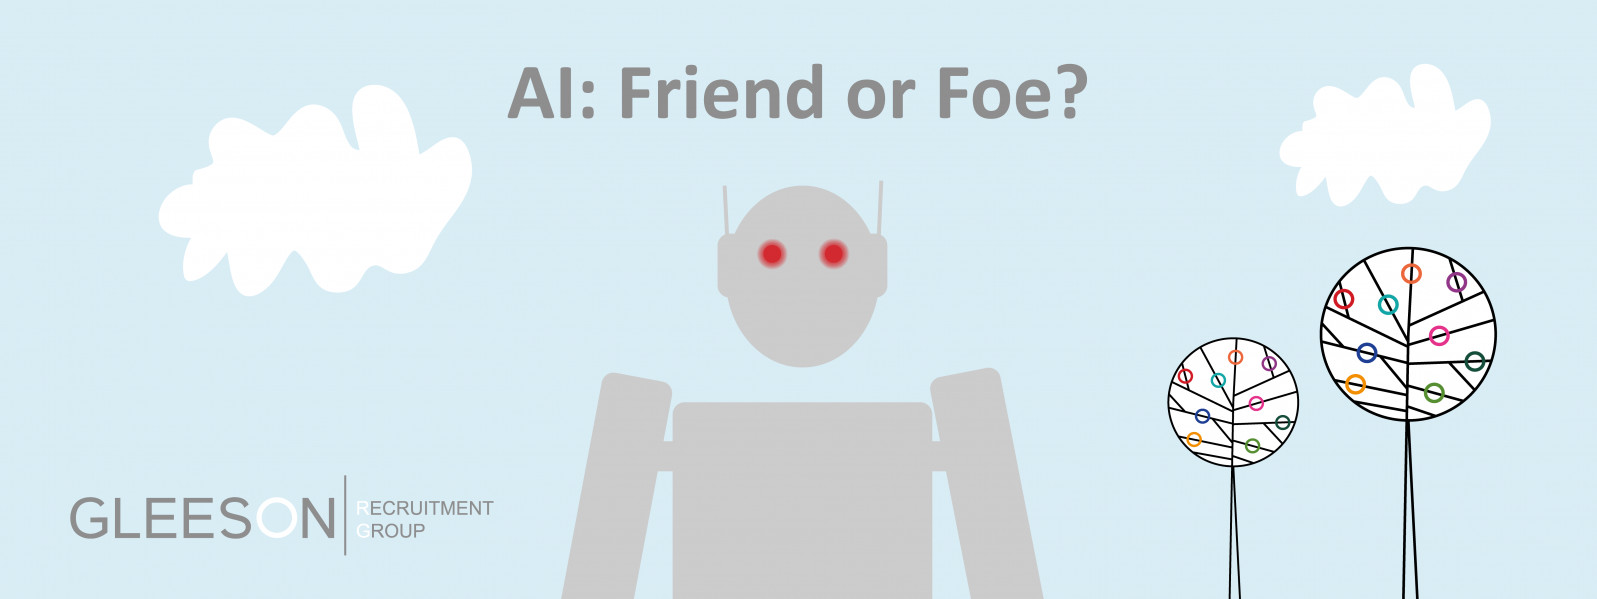 AI: Friend or Foe?